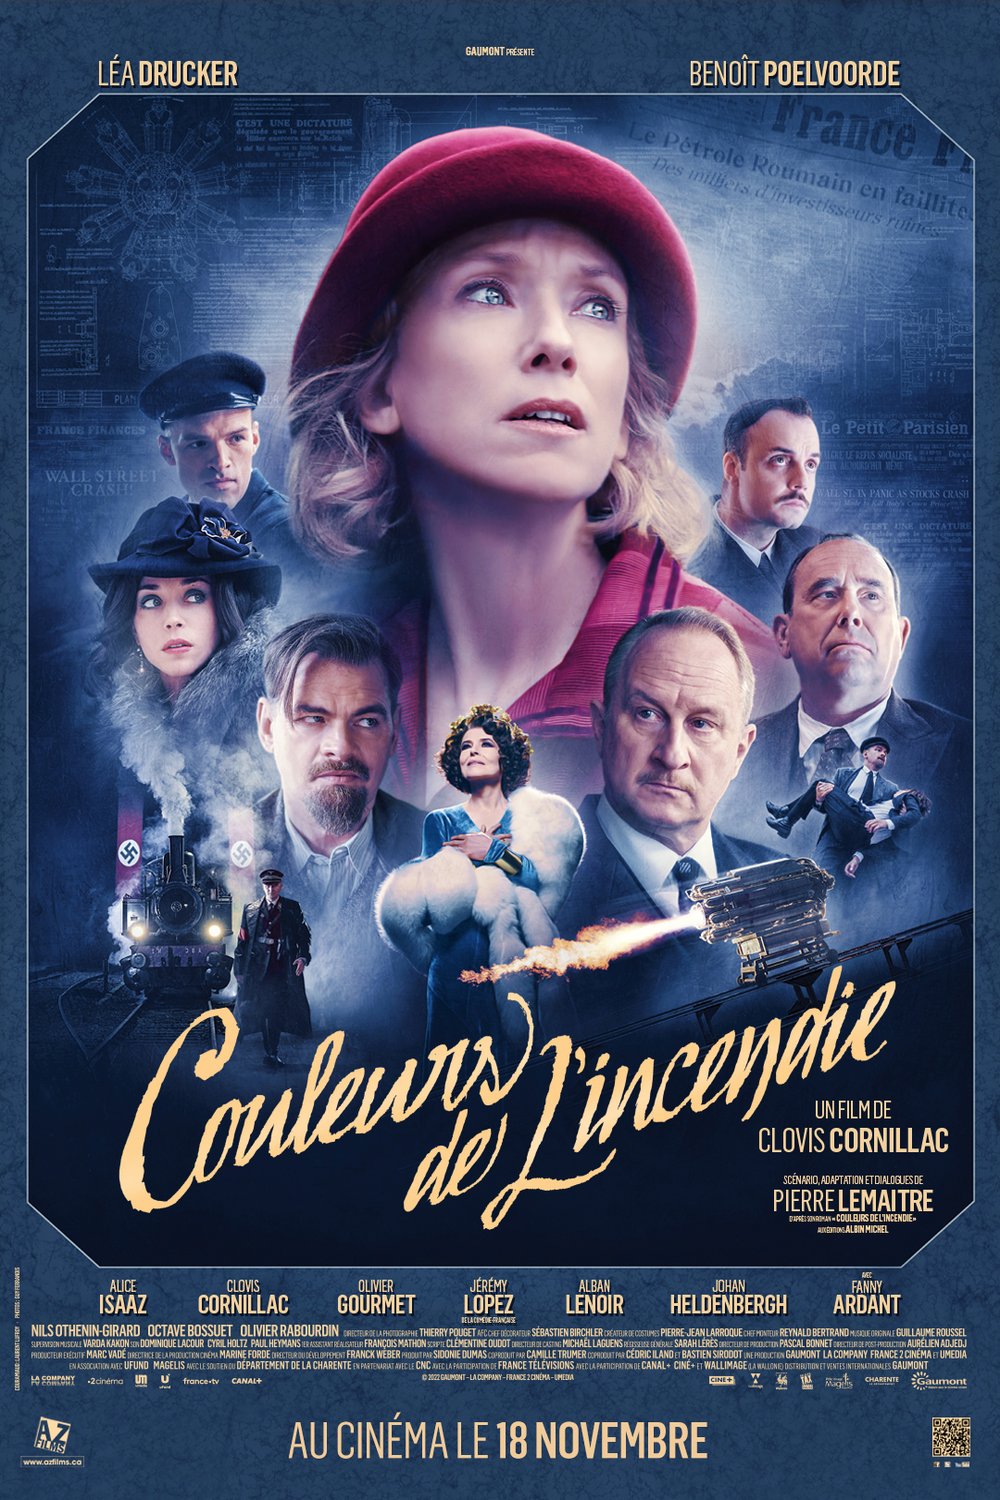 Poster of the movie Couleurs de l'incendie